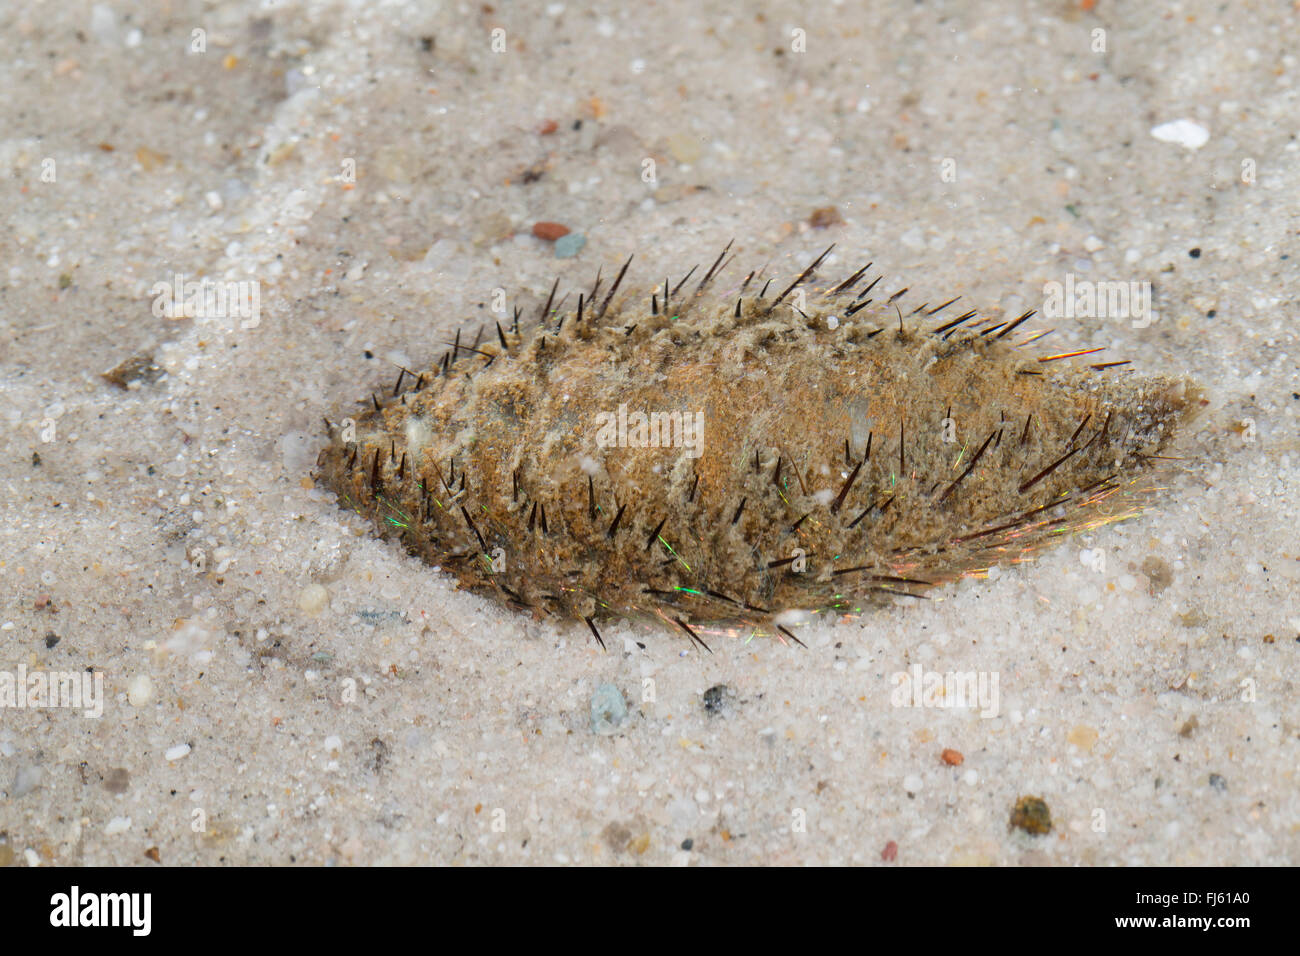 Europäischen Meer Maus (Aphrodita Aculeata), zwei Meer Maus auf dem Boden Stockfoto